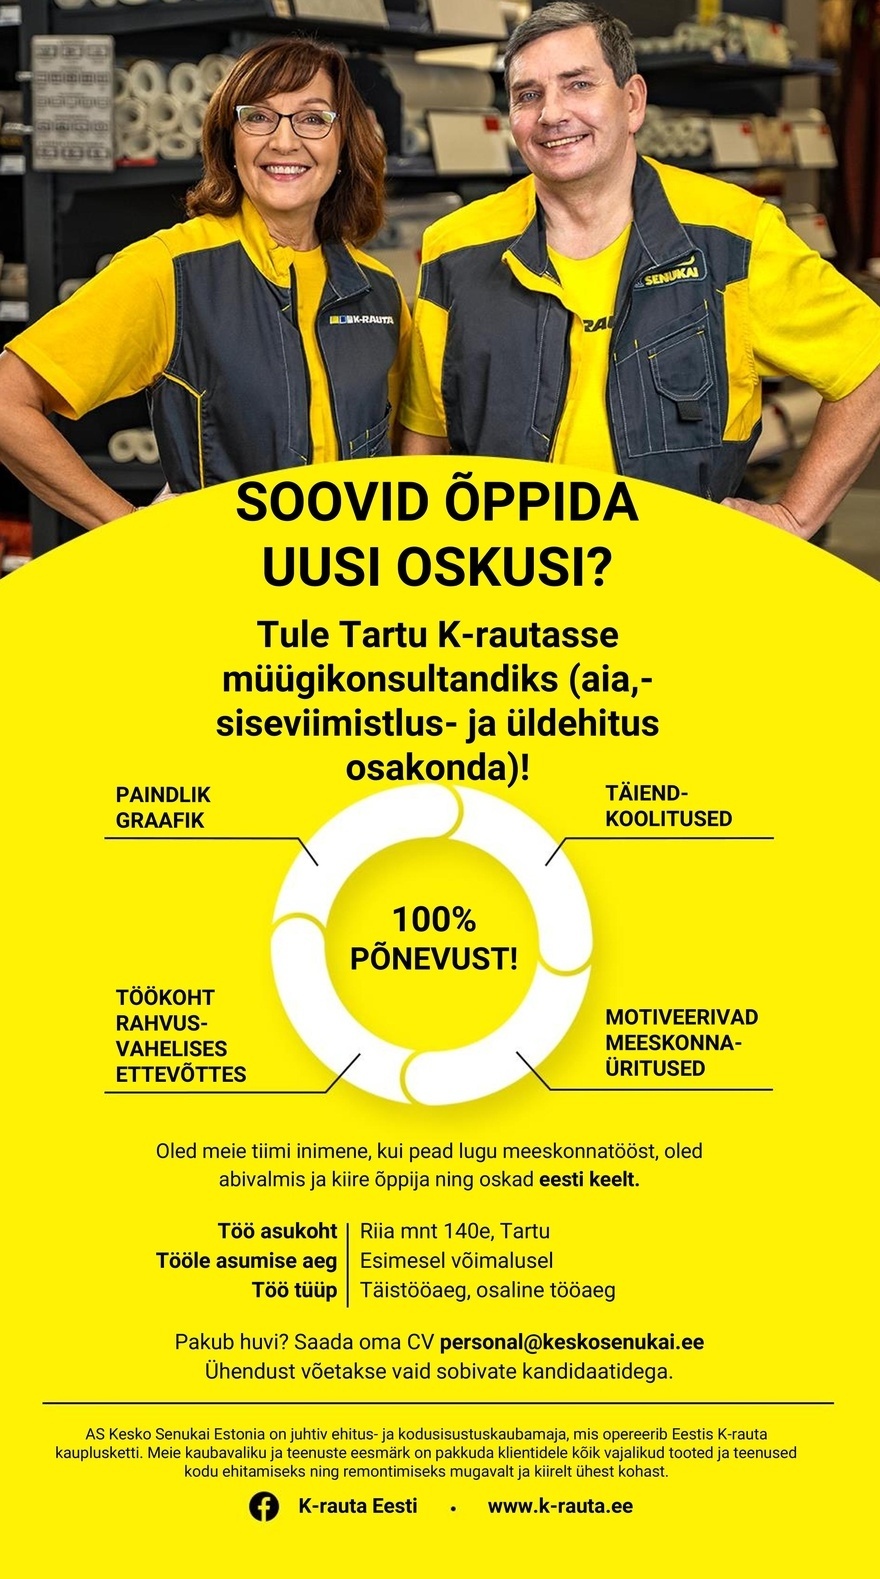 Kesko Senukai Estonia AS Müügikonsultant Tartu K-rauta kauplusesse (aia-, siseviimistlus- ja üldehitus osakonda)